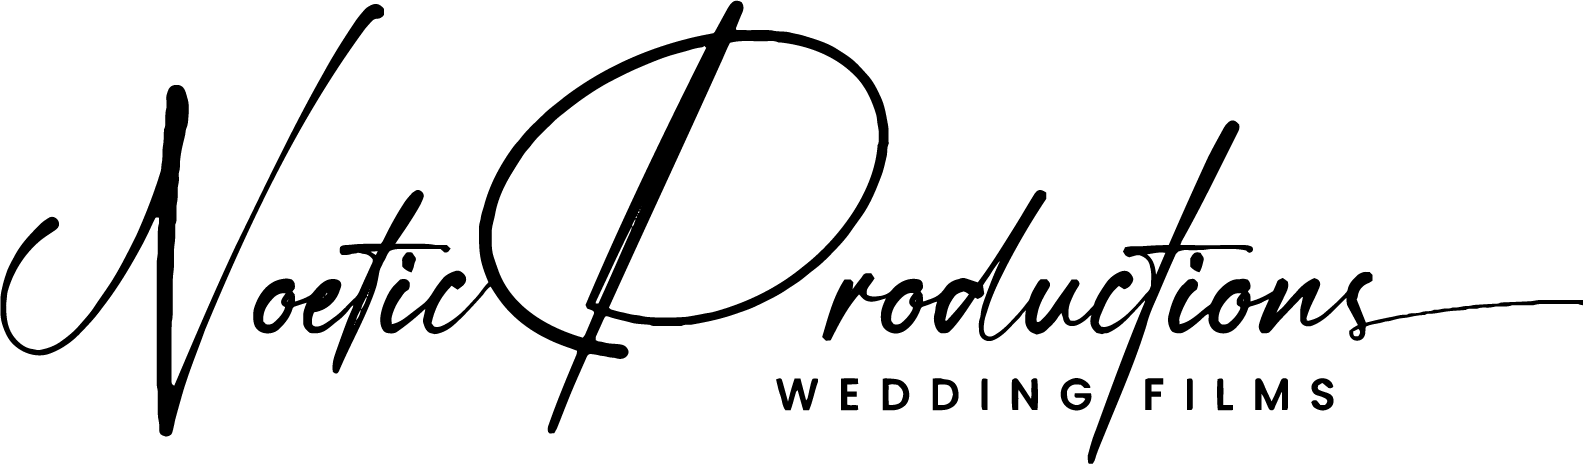 NOETIC WEDDINGS